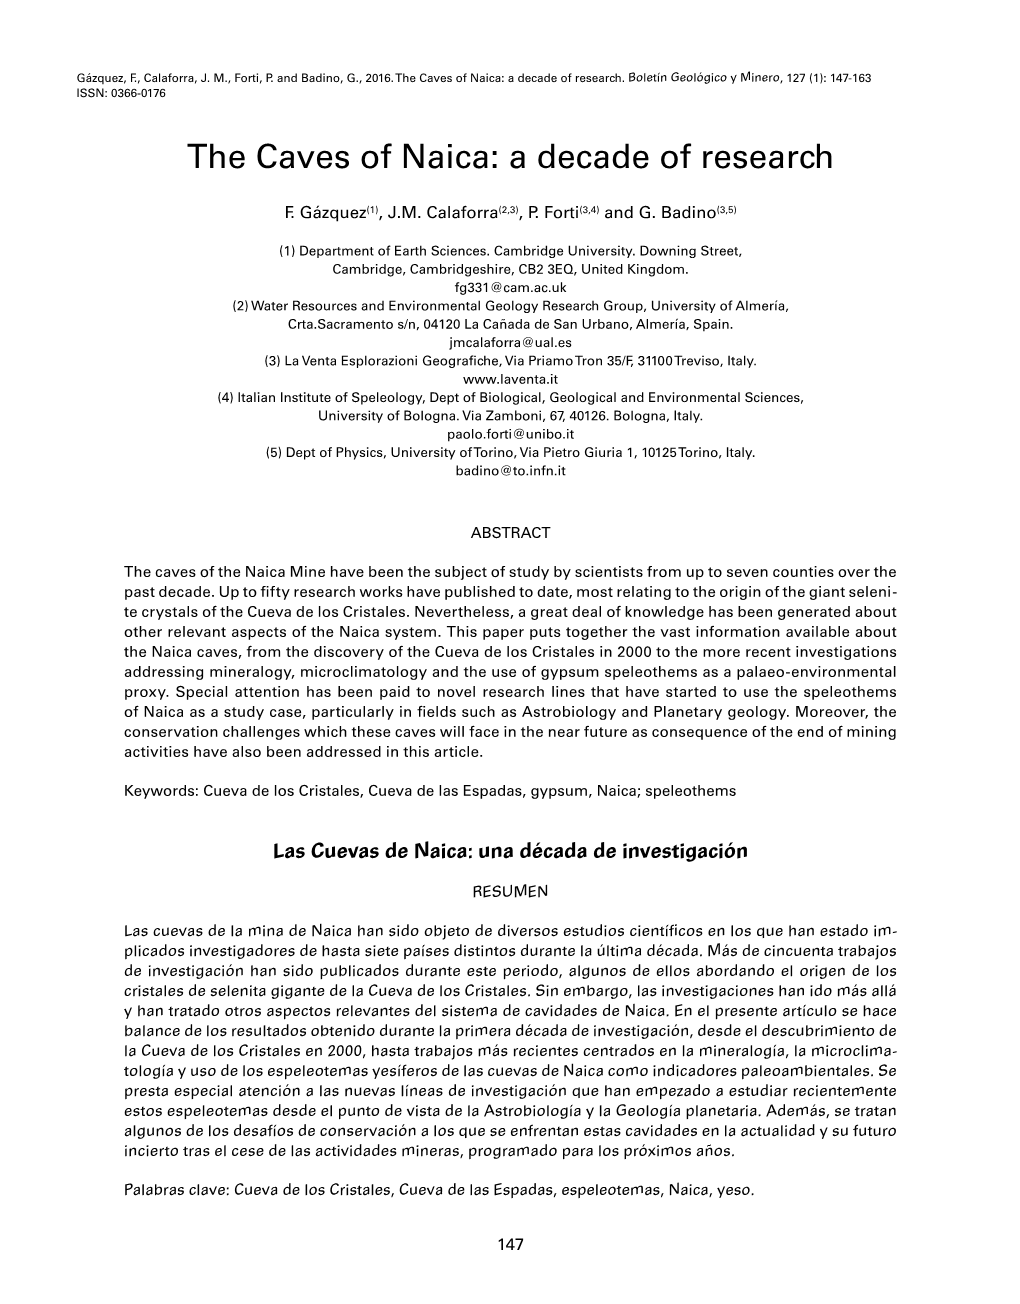 Las Cuevas De Naica: Una Década De Investigación